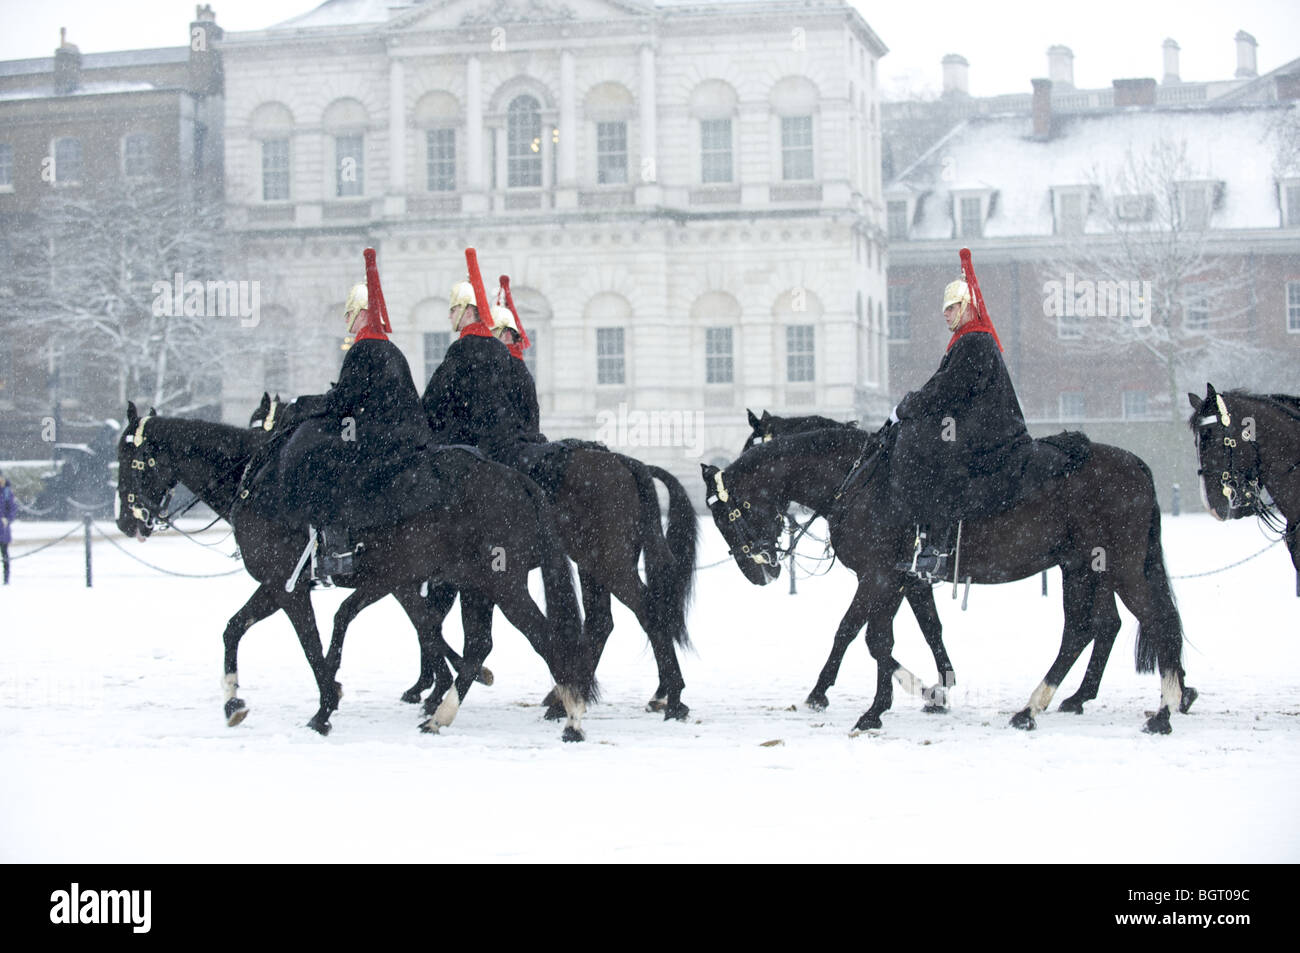 Le régiment de cavalerie de la Reine, du Blues et du Royals sur des chevaux dans la neige, Londres, Angleterre Banque D'Images